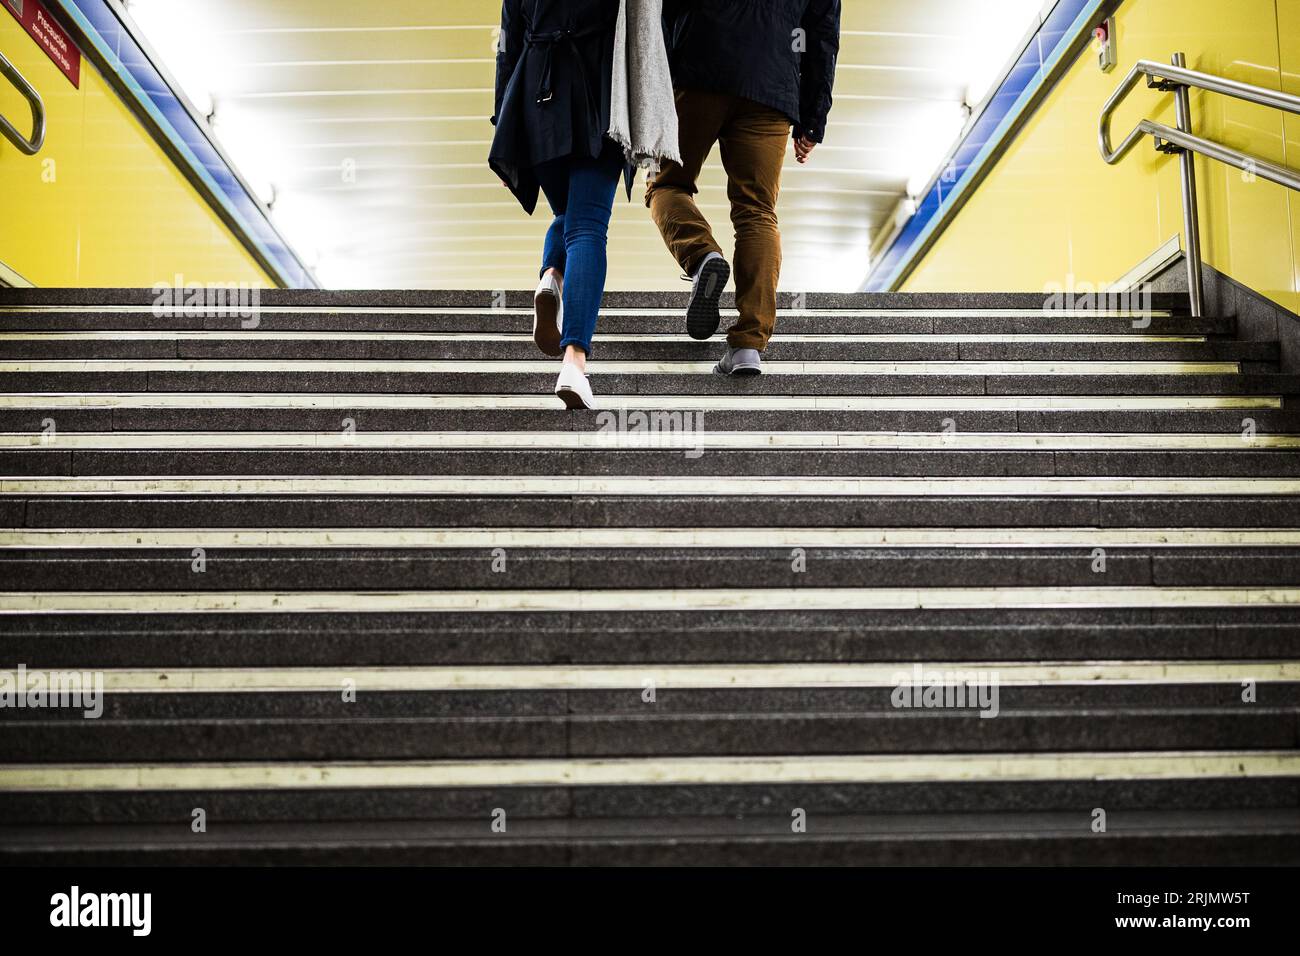 Couple on public transport subway underground train station commute Stock Photo